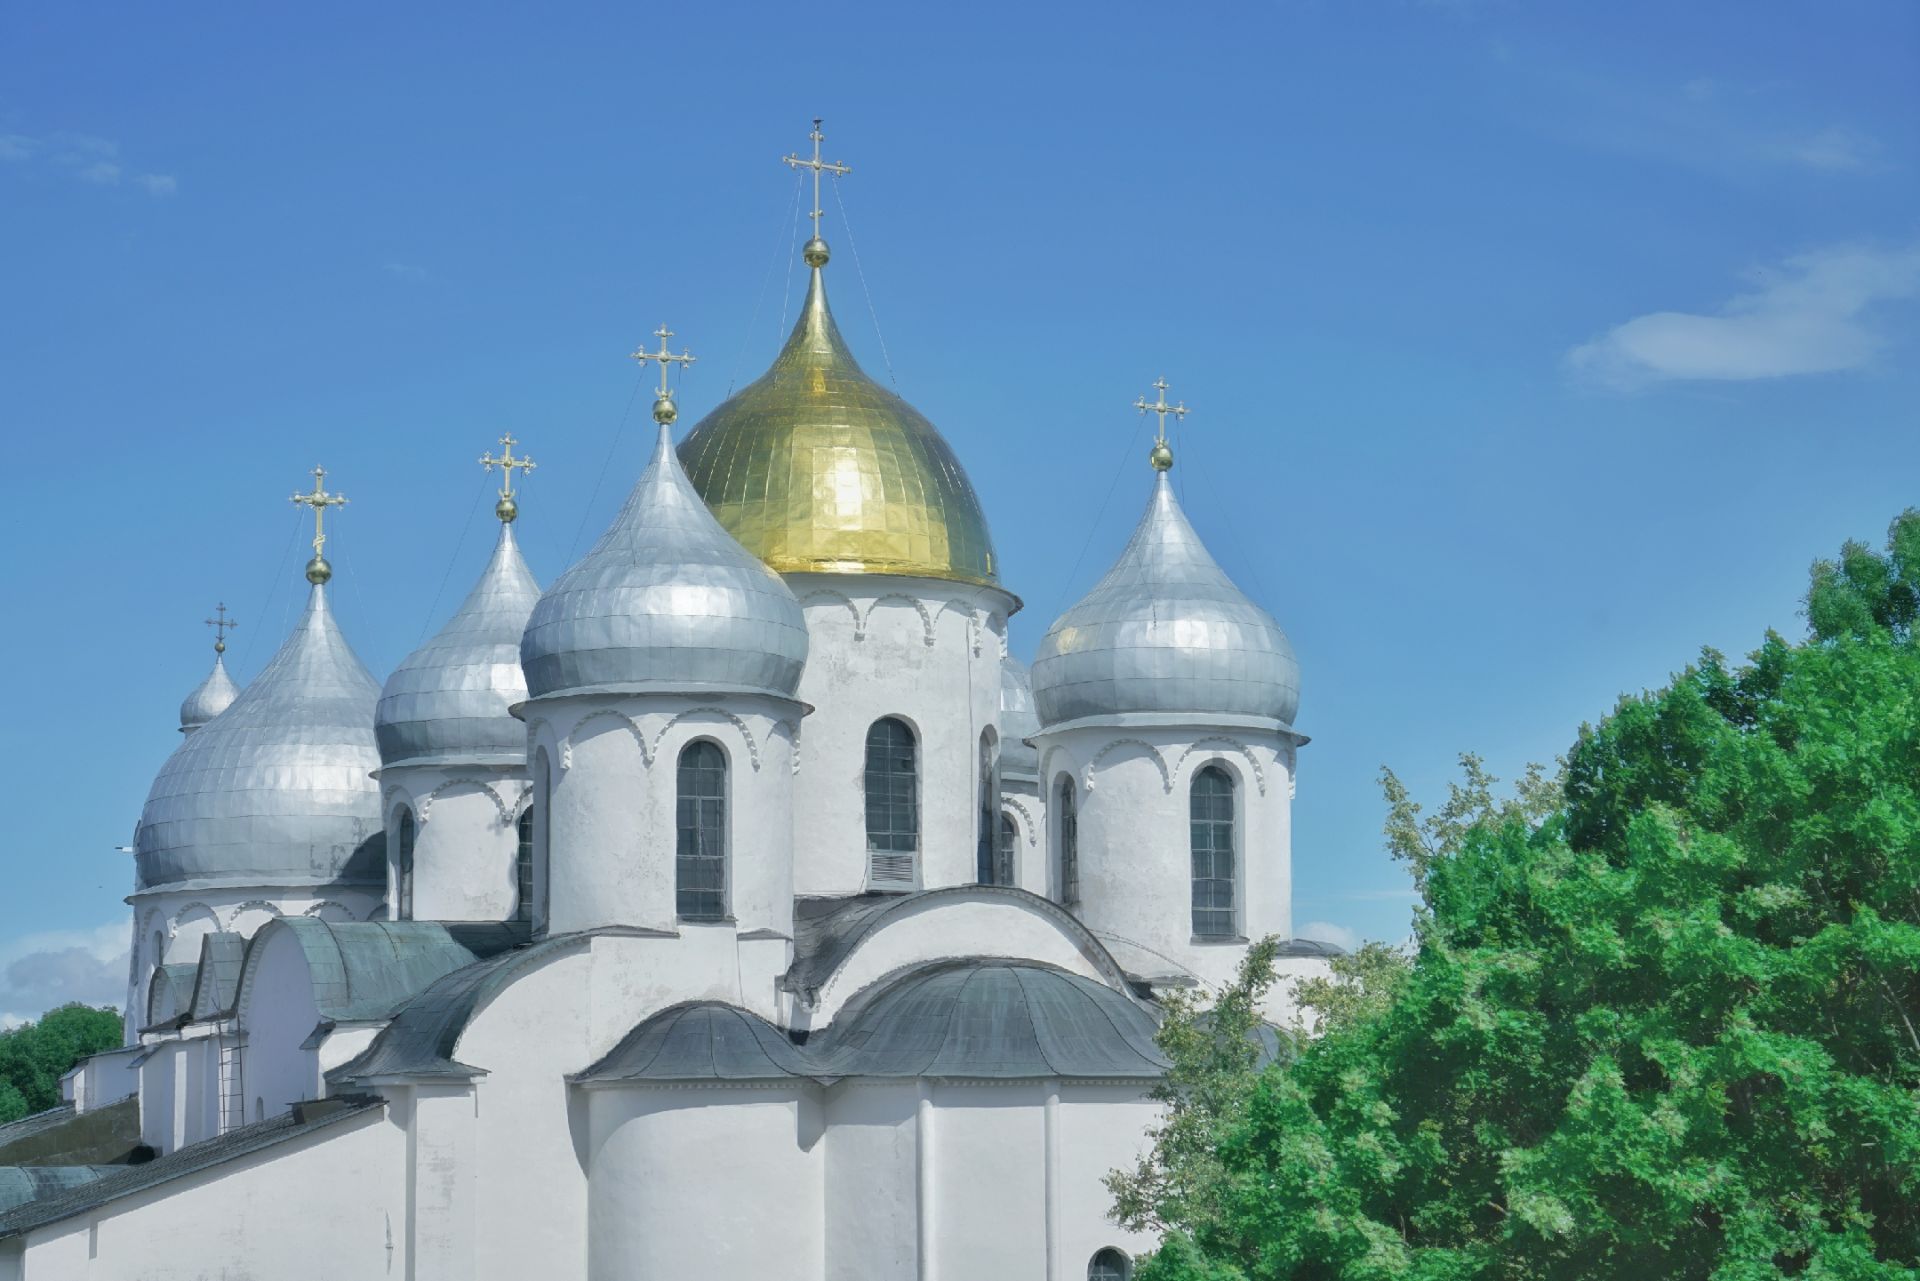 俄罗斯最古老城市 中世纪教堂建得象堡垒  圣索菲亚教堂在大诺夫哥罗德乃至整个俄罗斯都是神圣存在，这教